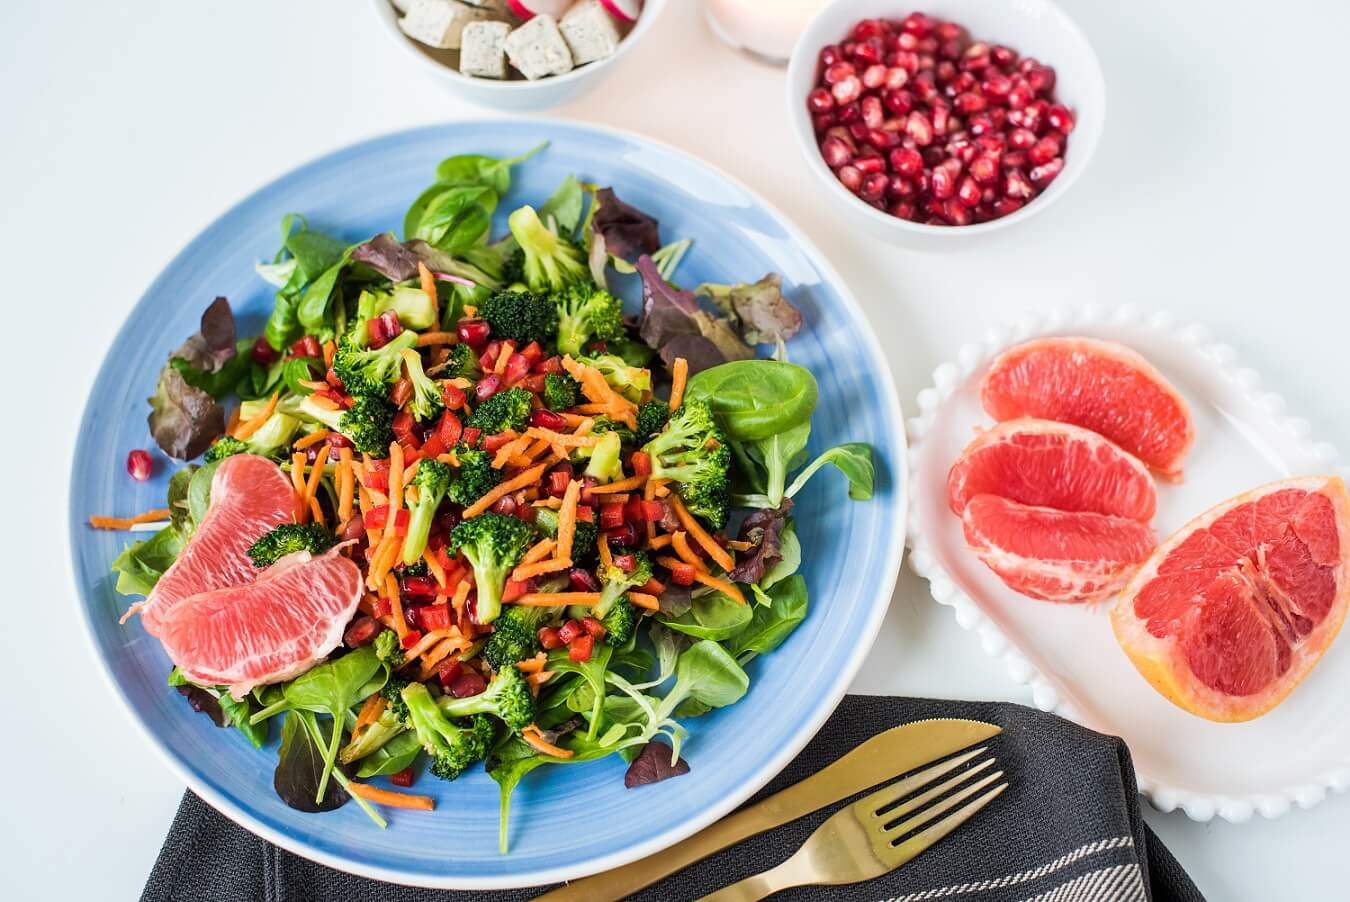 brokoli-nar-salata-salata sa brokolijem-salata sa narom-salata sa pomorandžom-zimska salata-recept-ručak-vegan-zdravo-večera-prilog-predjelo-iceberg salat centar-klub zdravih navika-totally wellness